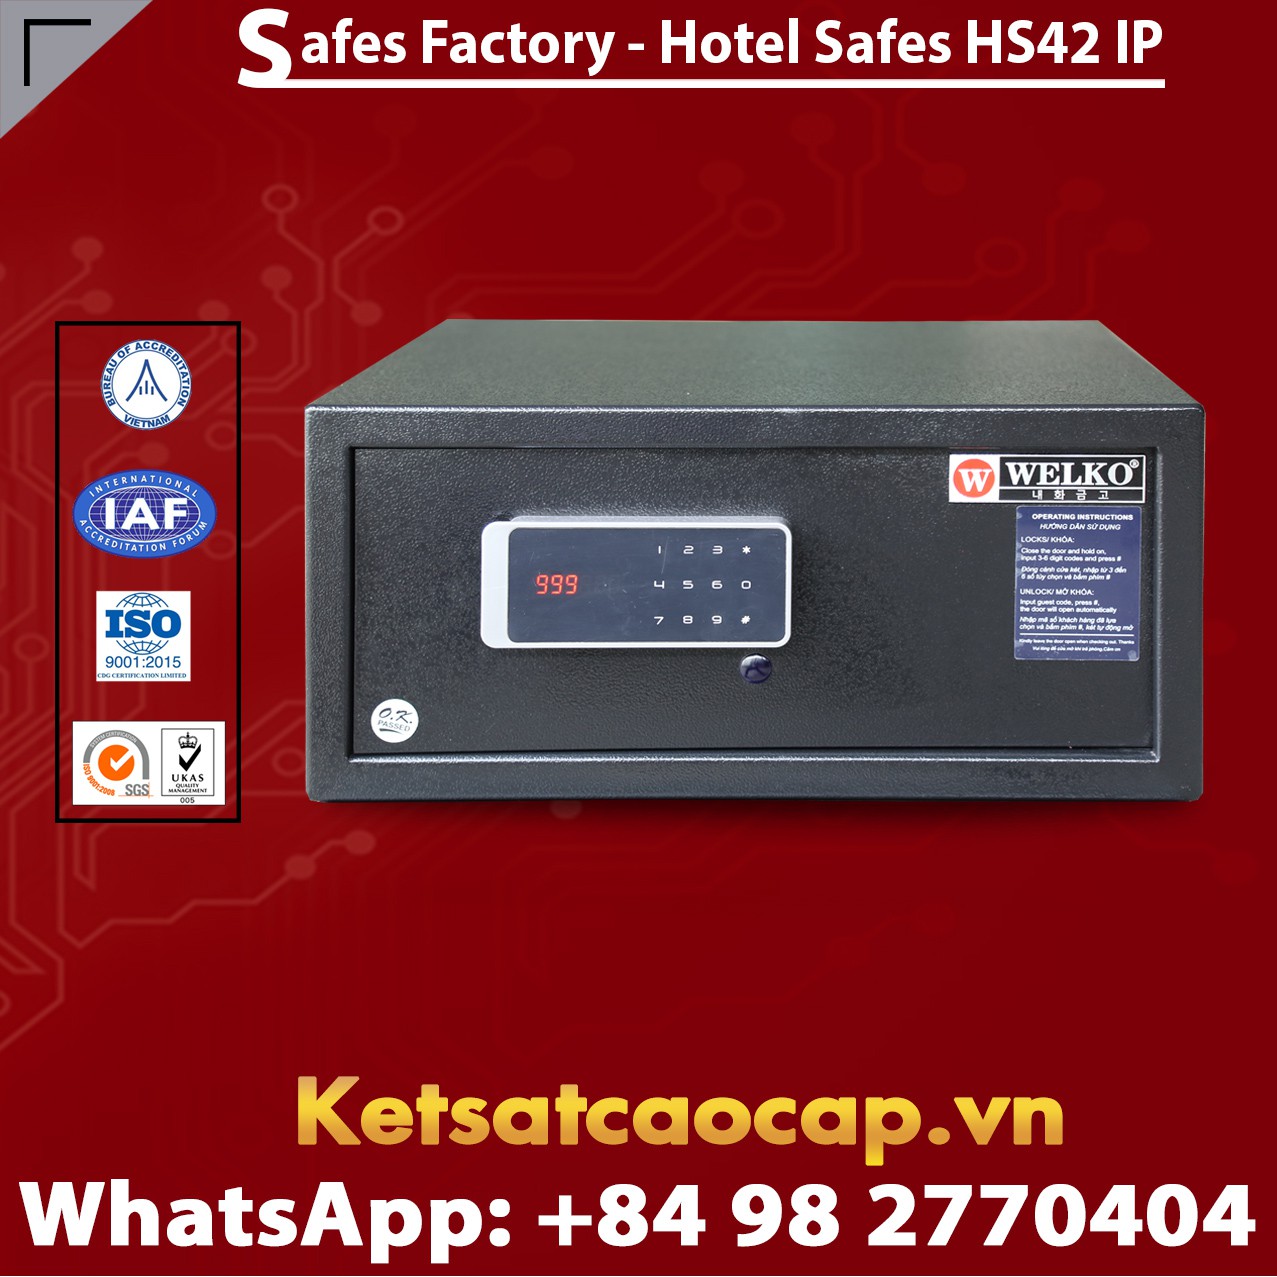 Best Hotel Safe For Home WELKO HS42 IP